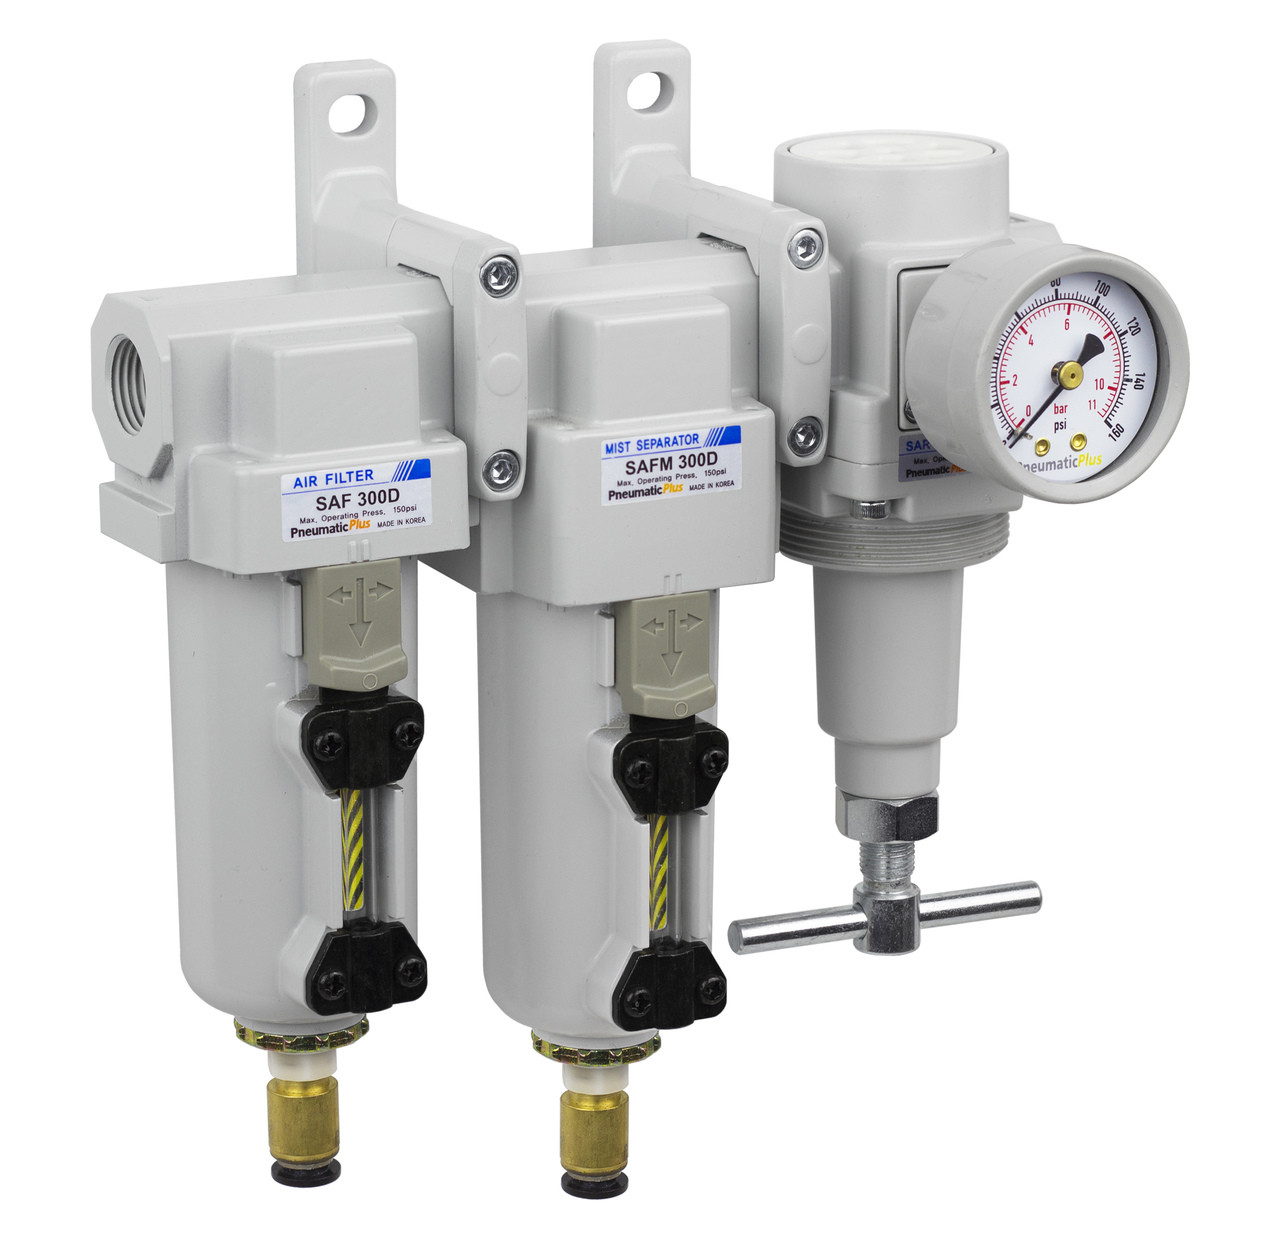 Air Pressure Regulator for compressed air 1" w/ gauge High Pressure 300 PSI Max 